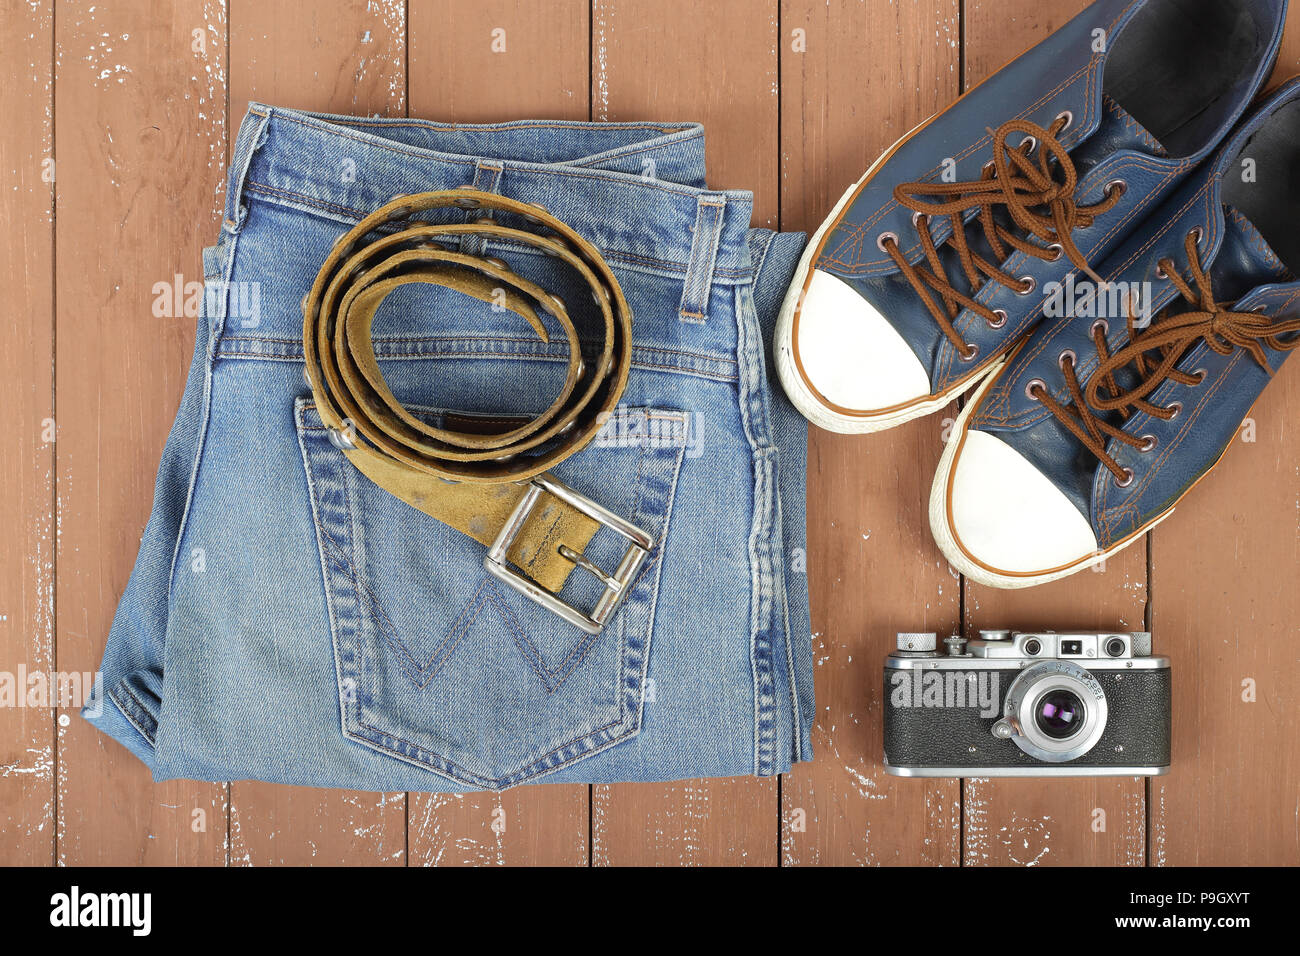 Vêtements, chaussures et accessoires - Top view la vieille caméra, ceinture de cuir, et gumshoes jeans bleu sur un fond de bois Banque D'Images